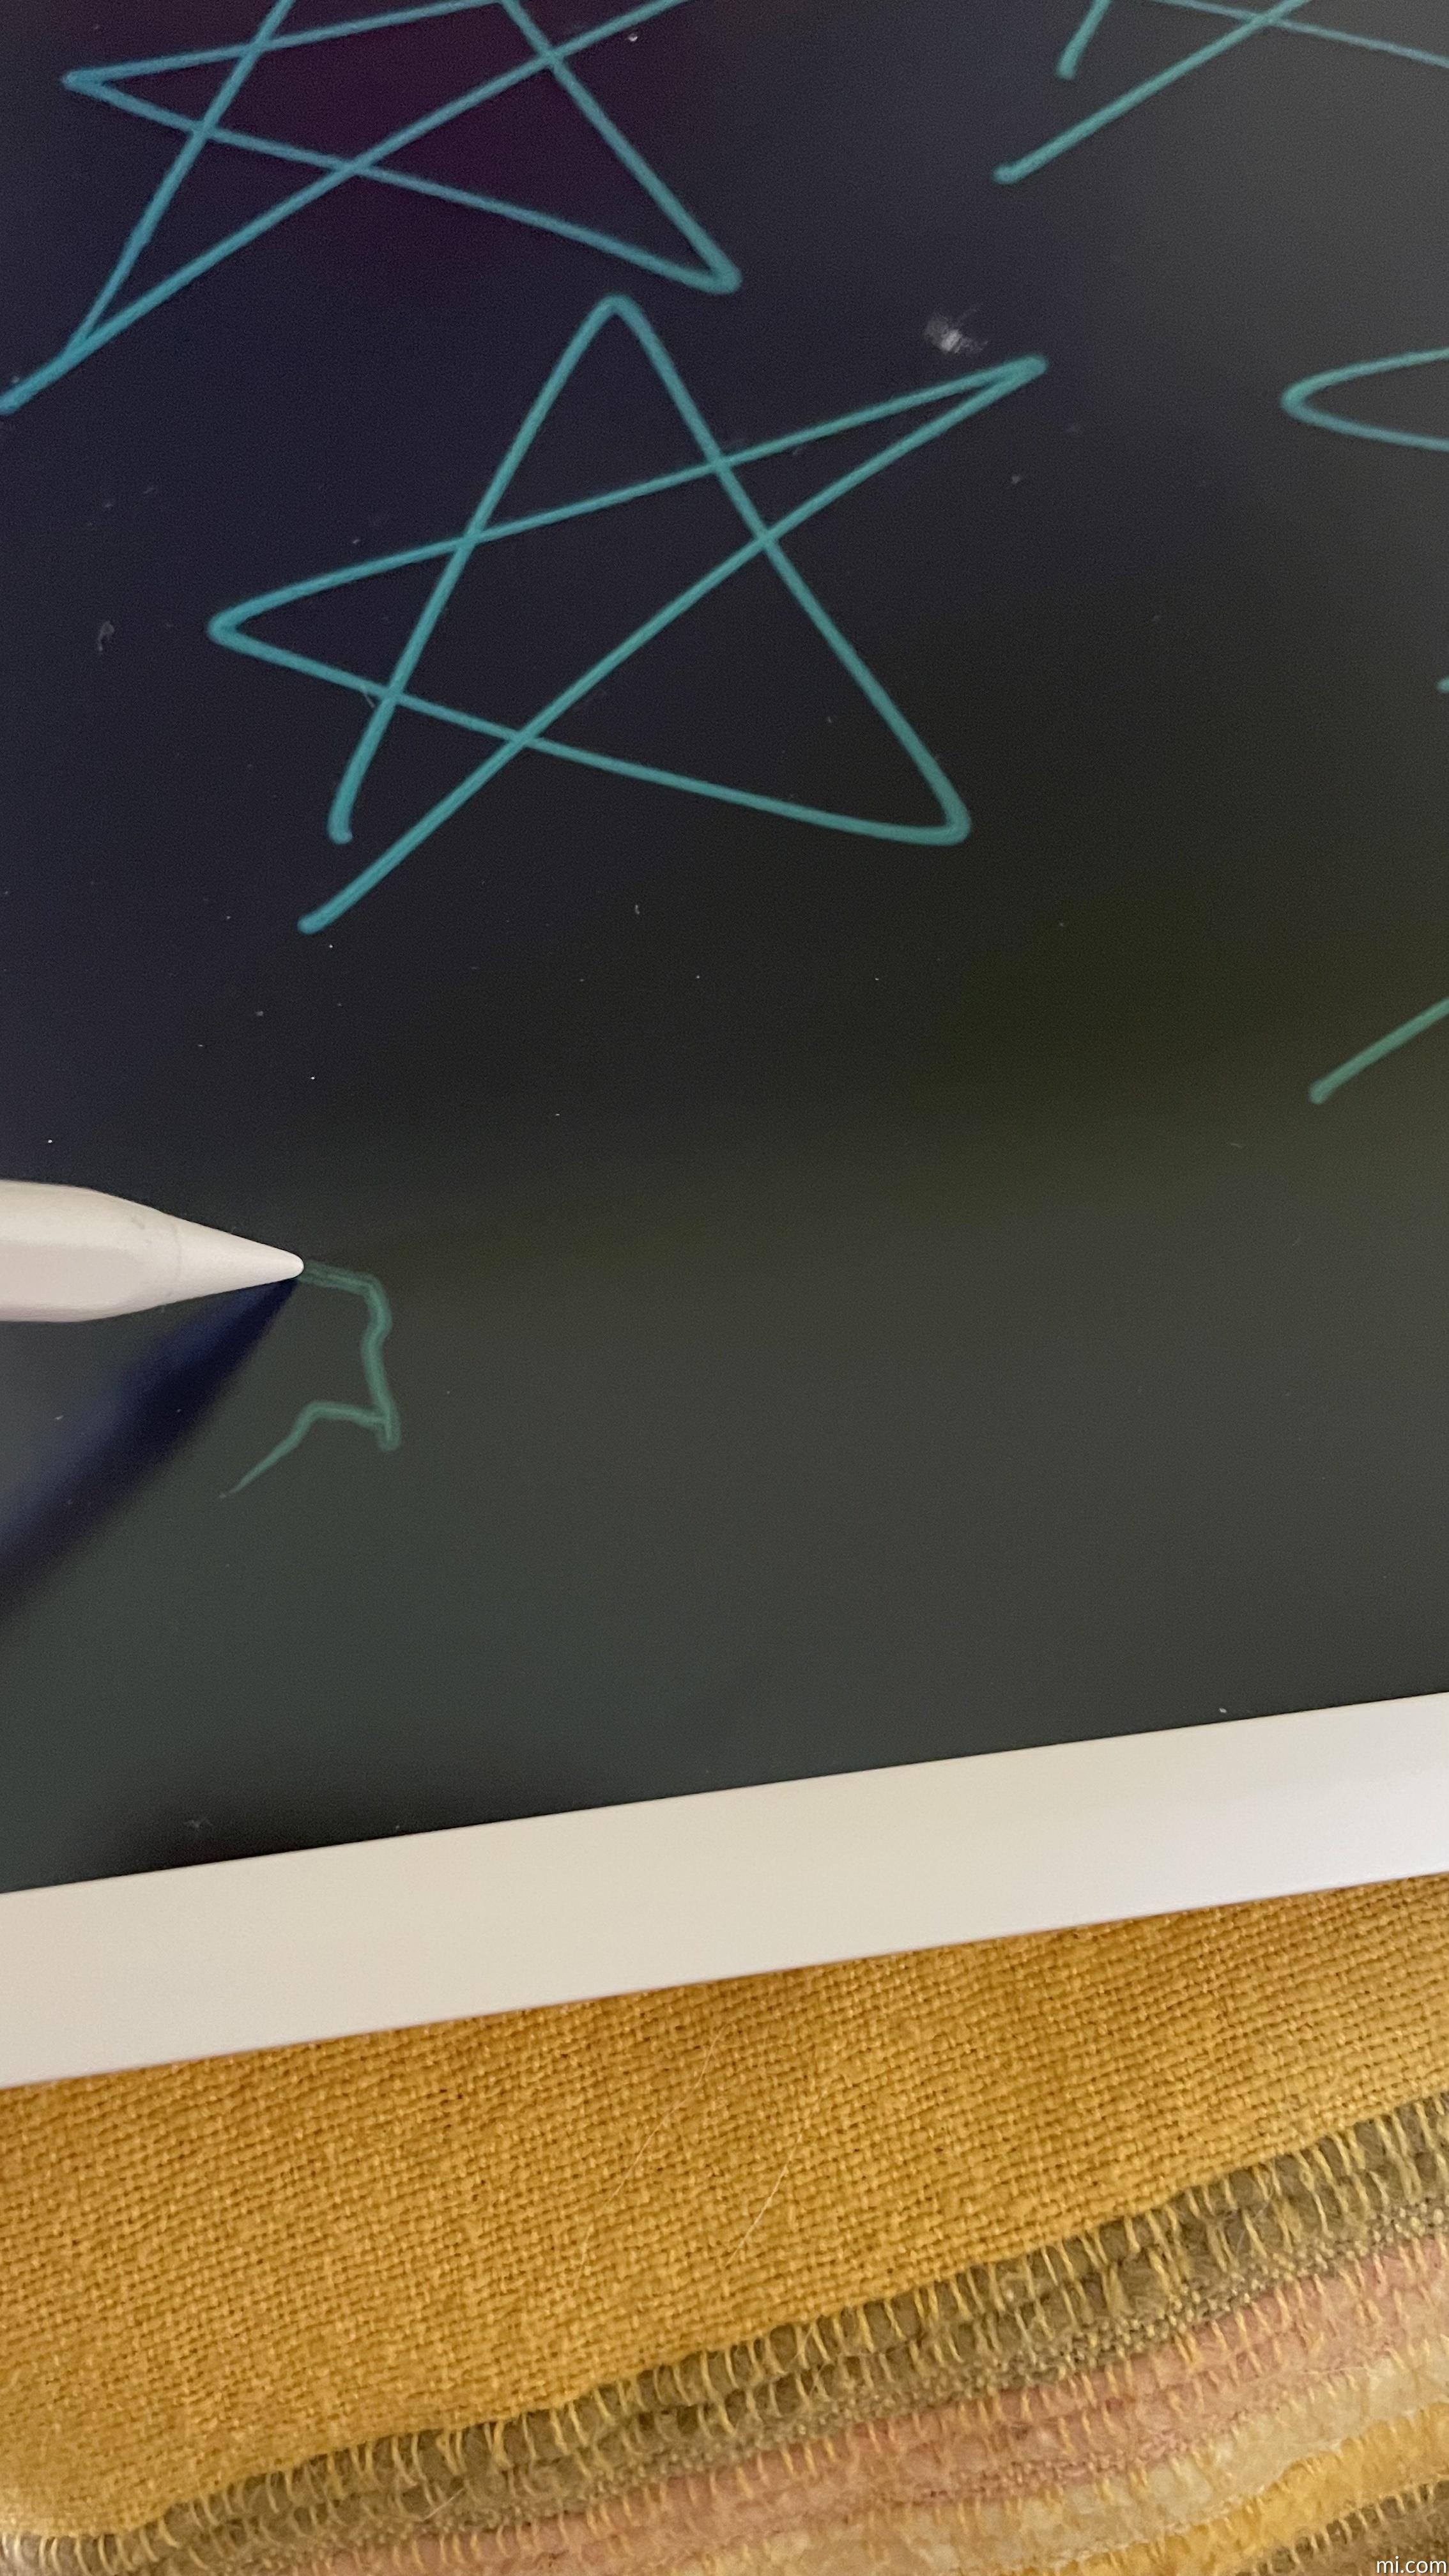 Xiaomi Mi LCD Writing Tablet 13.5, Tavoletta Grafica LCD Da 13.5,  Scrittura Sensibile Alla Pressione, Stilo Magnetico, Bianco : Xiaomi:  : Informatica